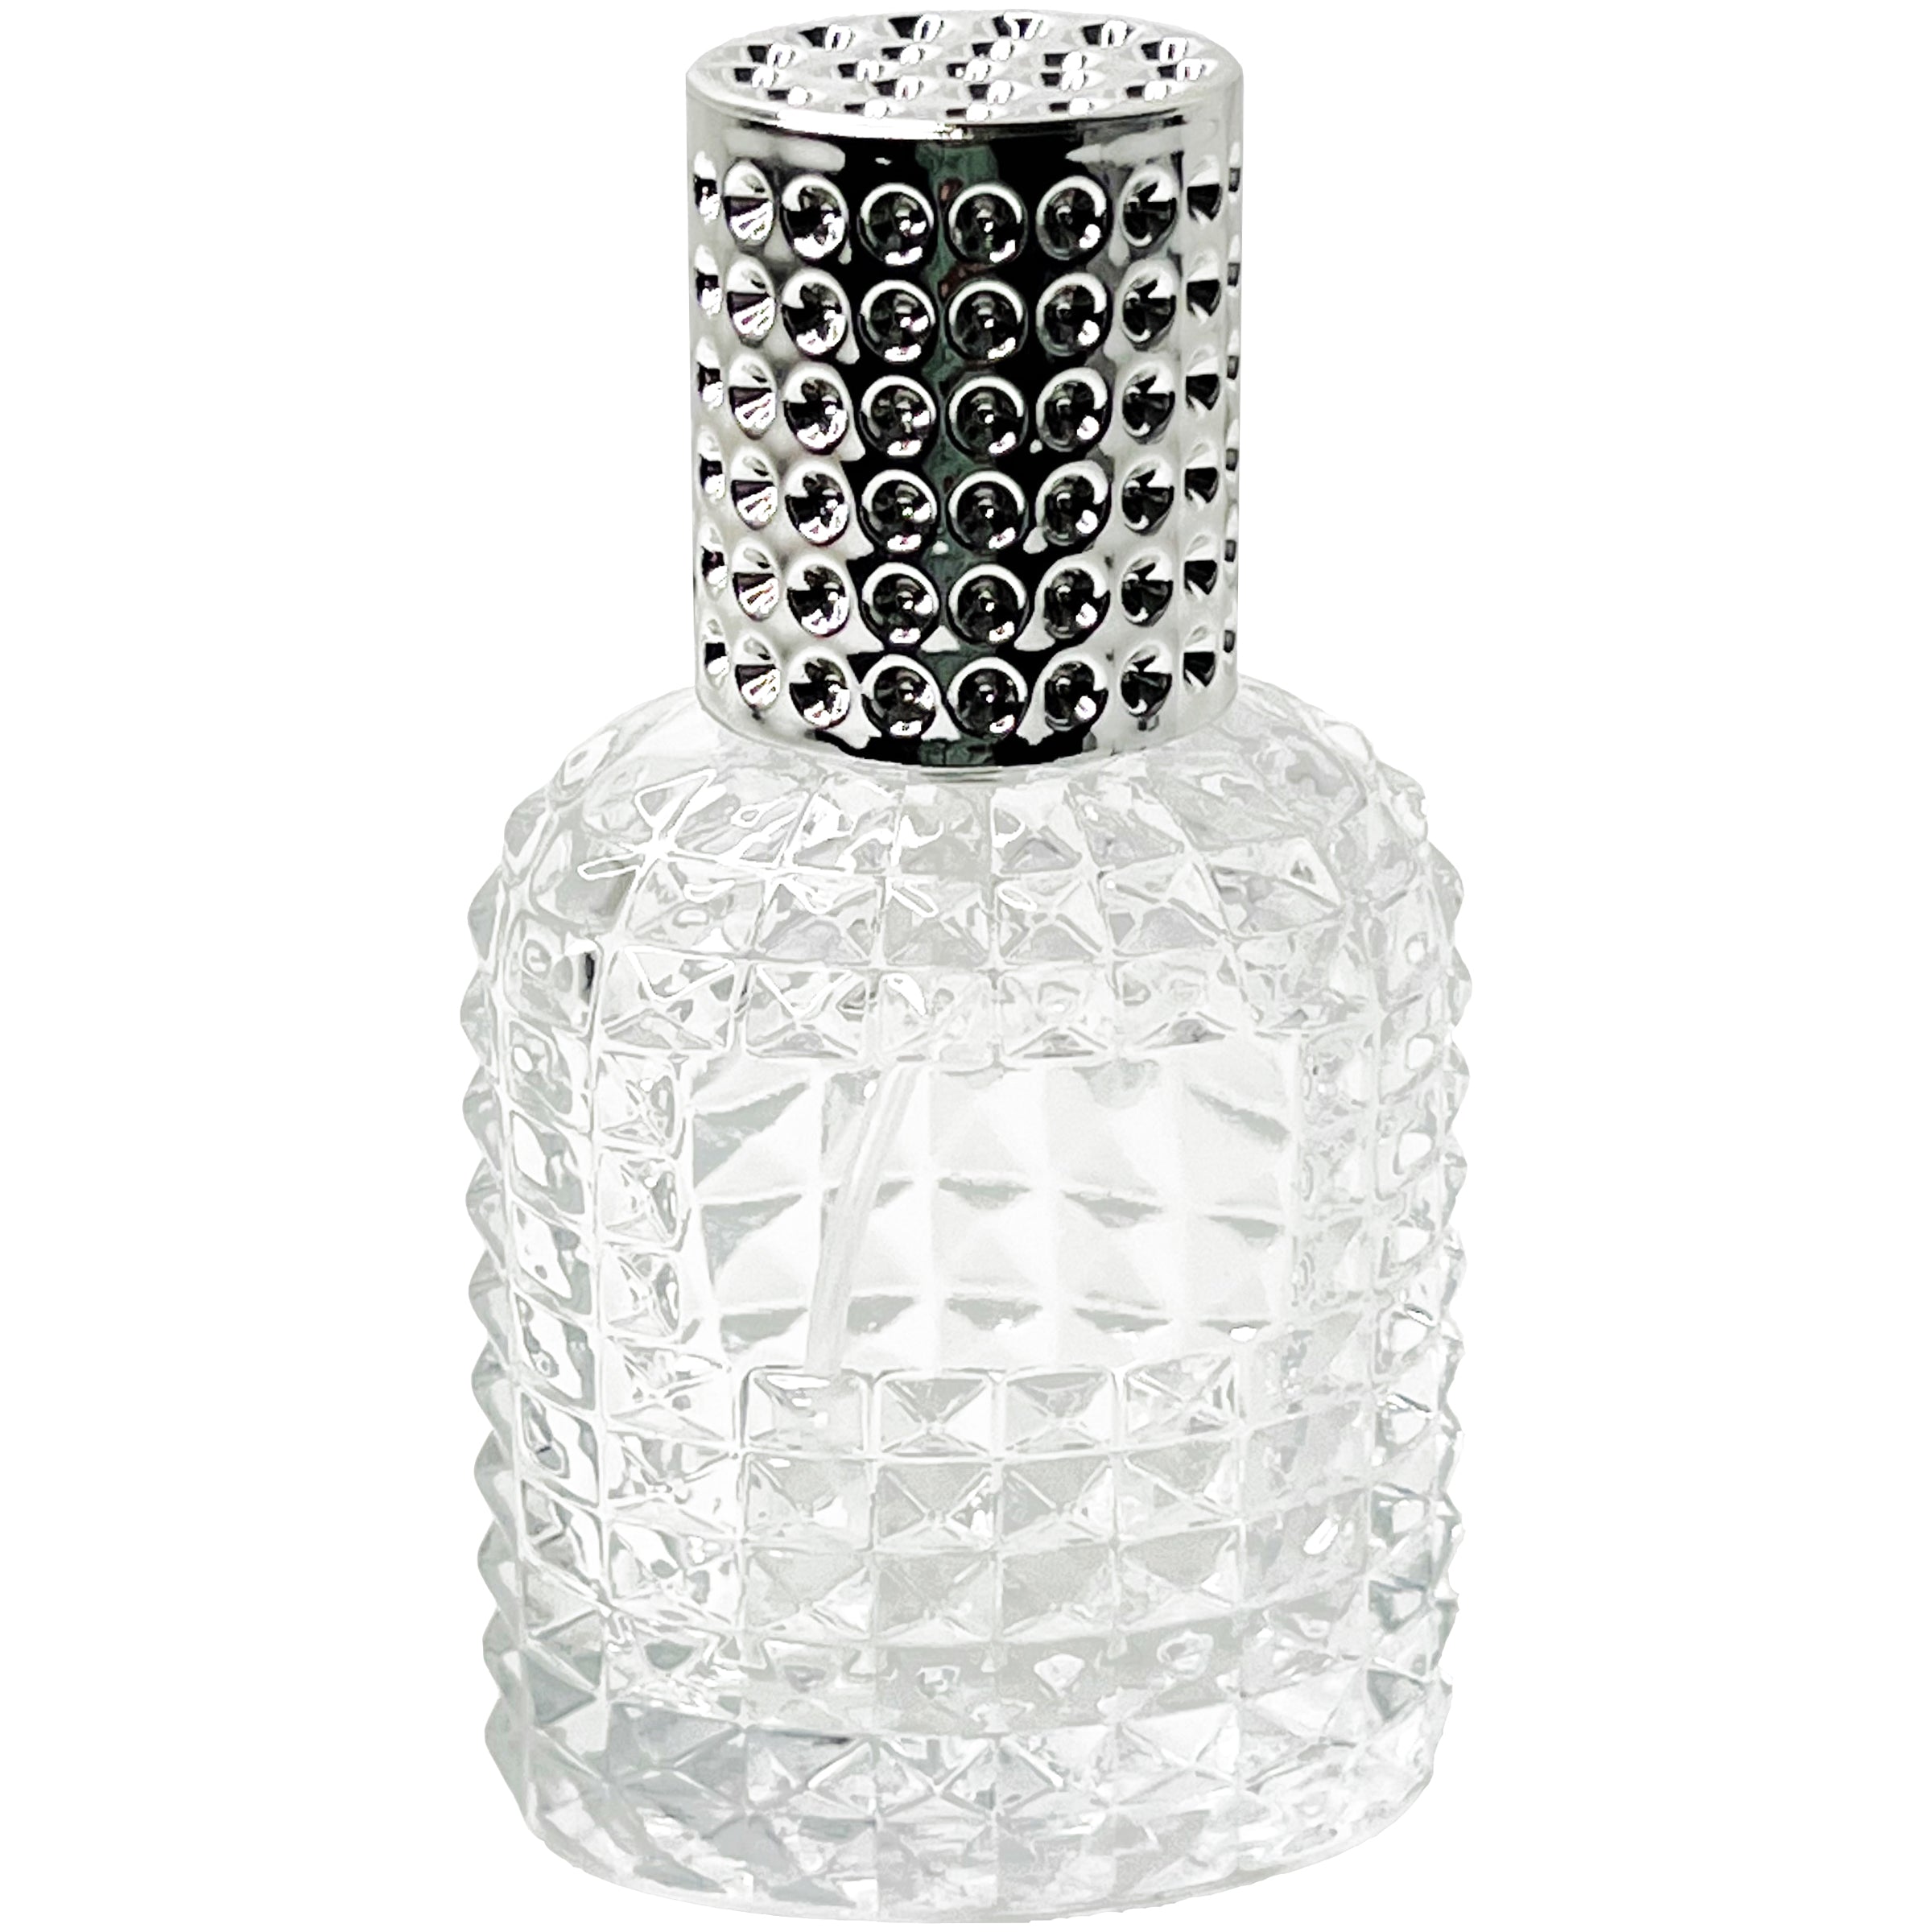 30ml 1oz Pineapple glass perfume spray bottles